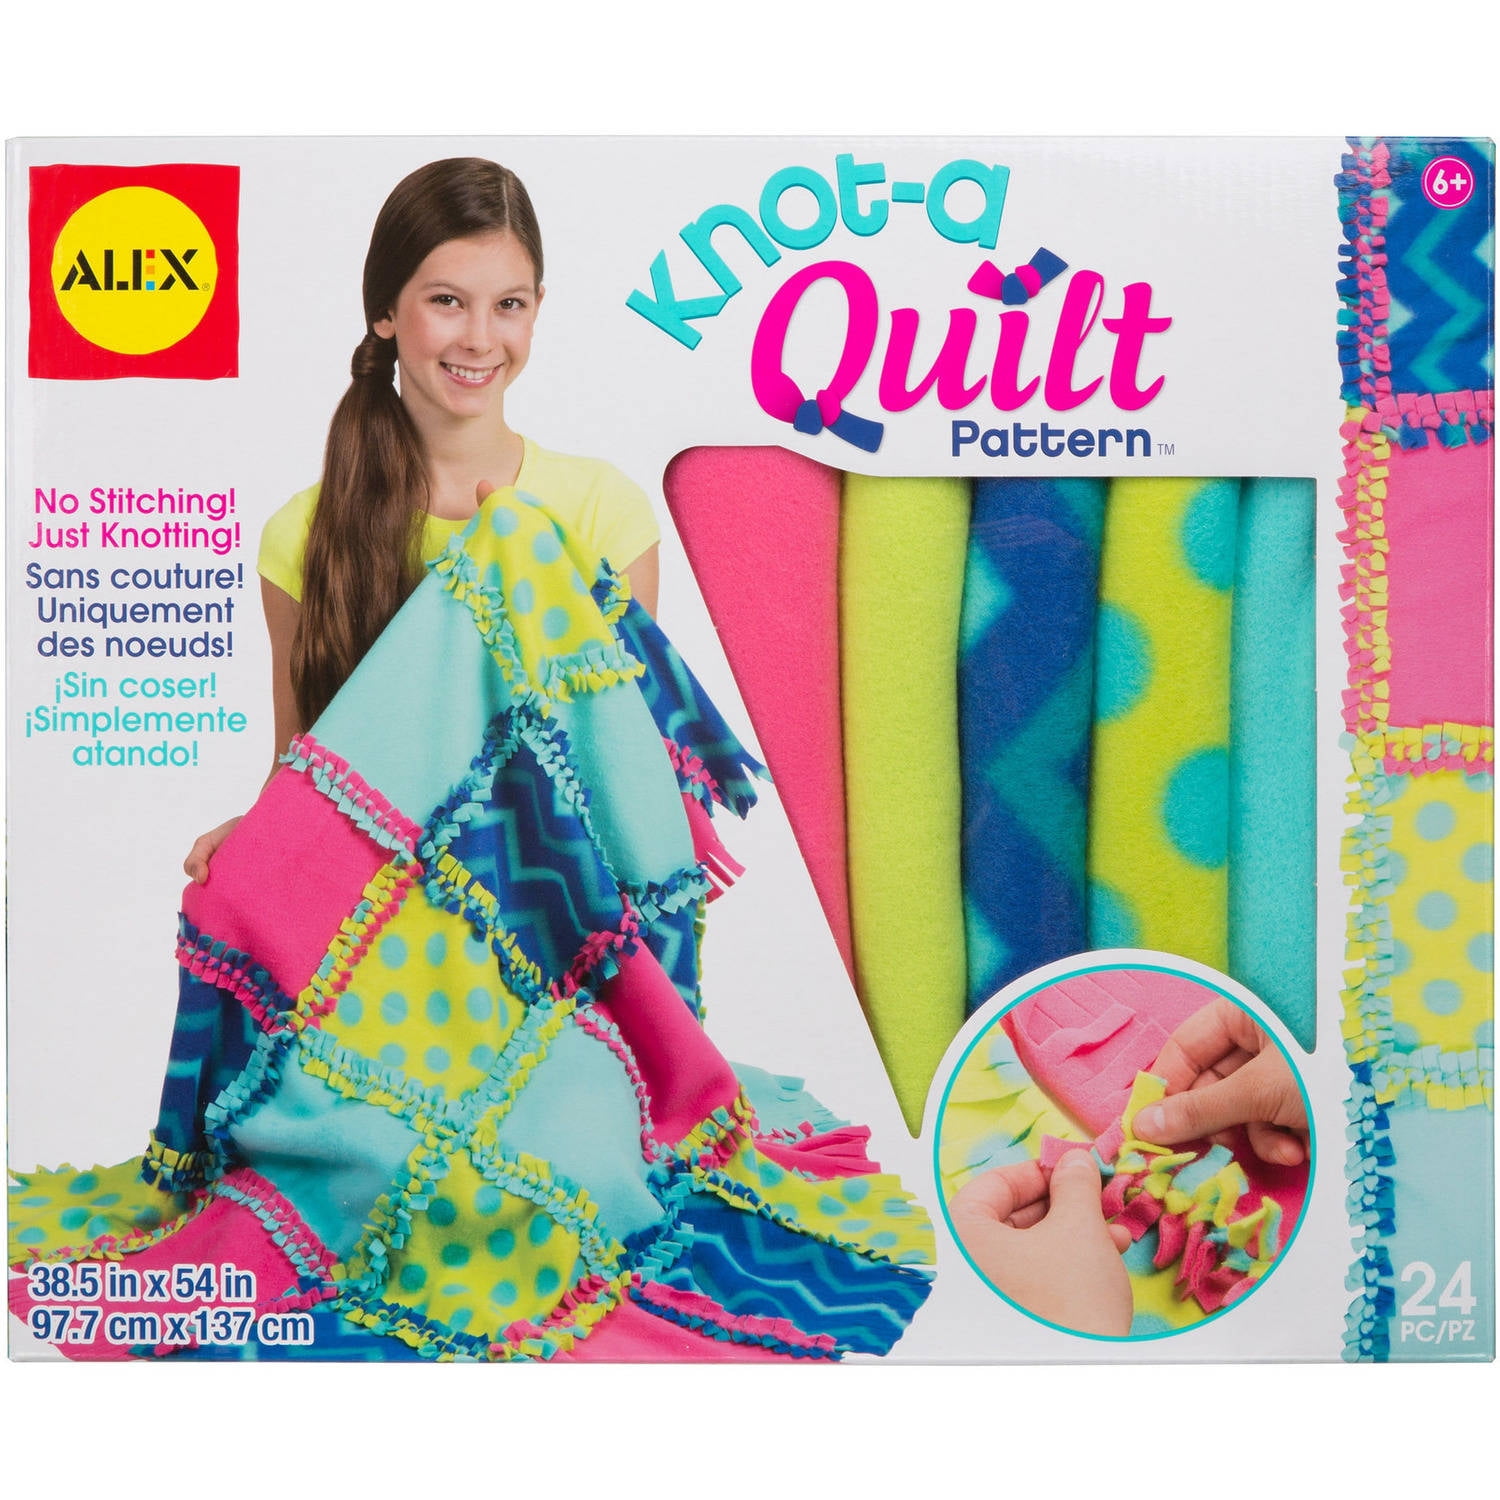 ALEX Toys Craft Knot A Quilt Pattern Walmart.com